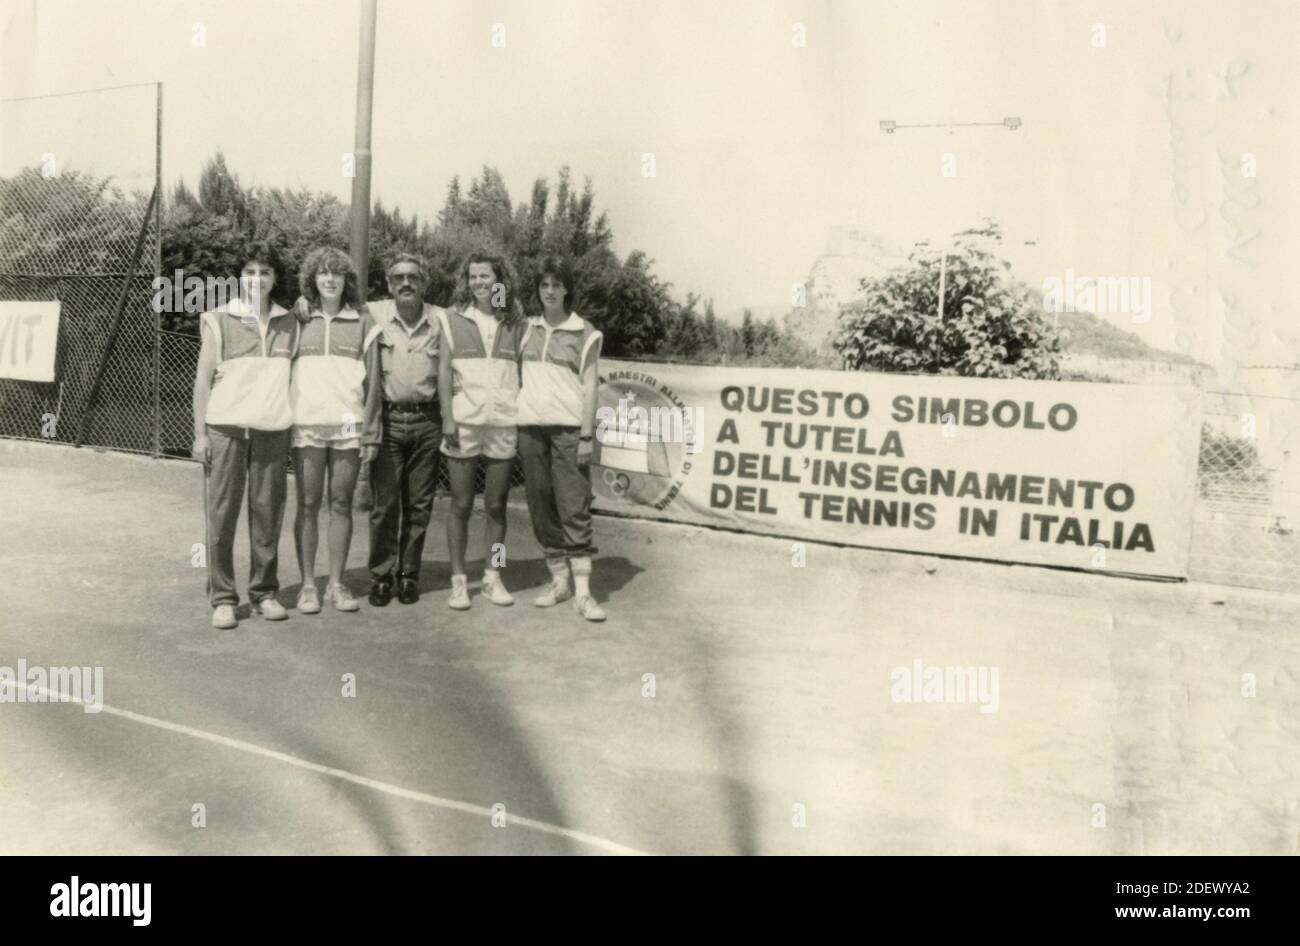 Tennis Roma 1 cl. Grimaldi, Dalla Valle, Captain Cucchiaroni, Canapi, and Falaffa, Italy 1980s Stock Photo